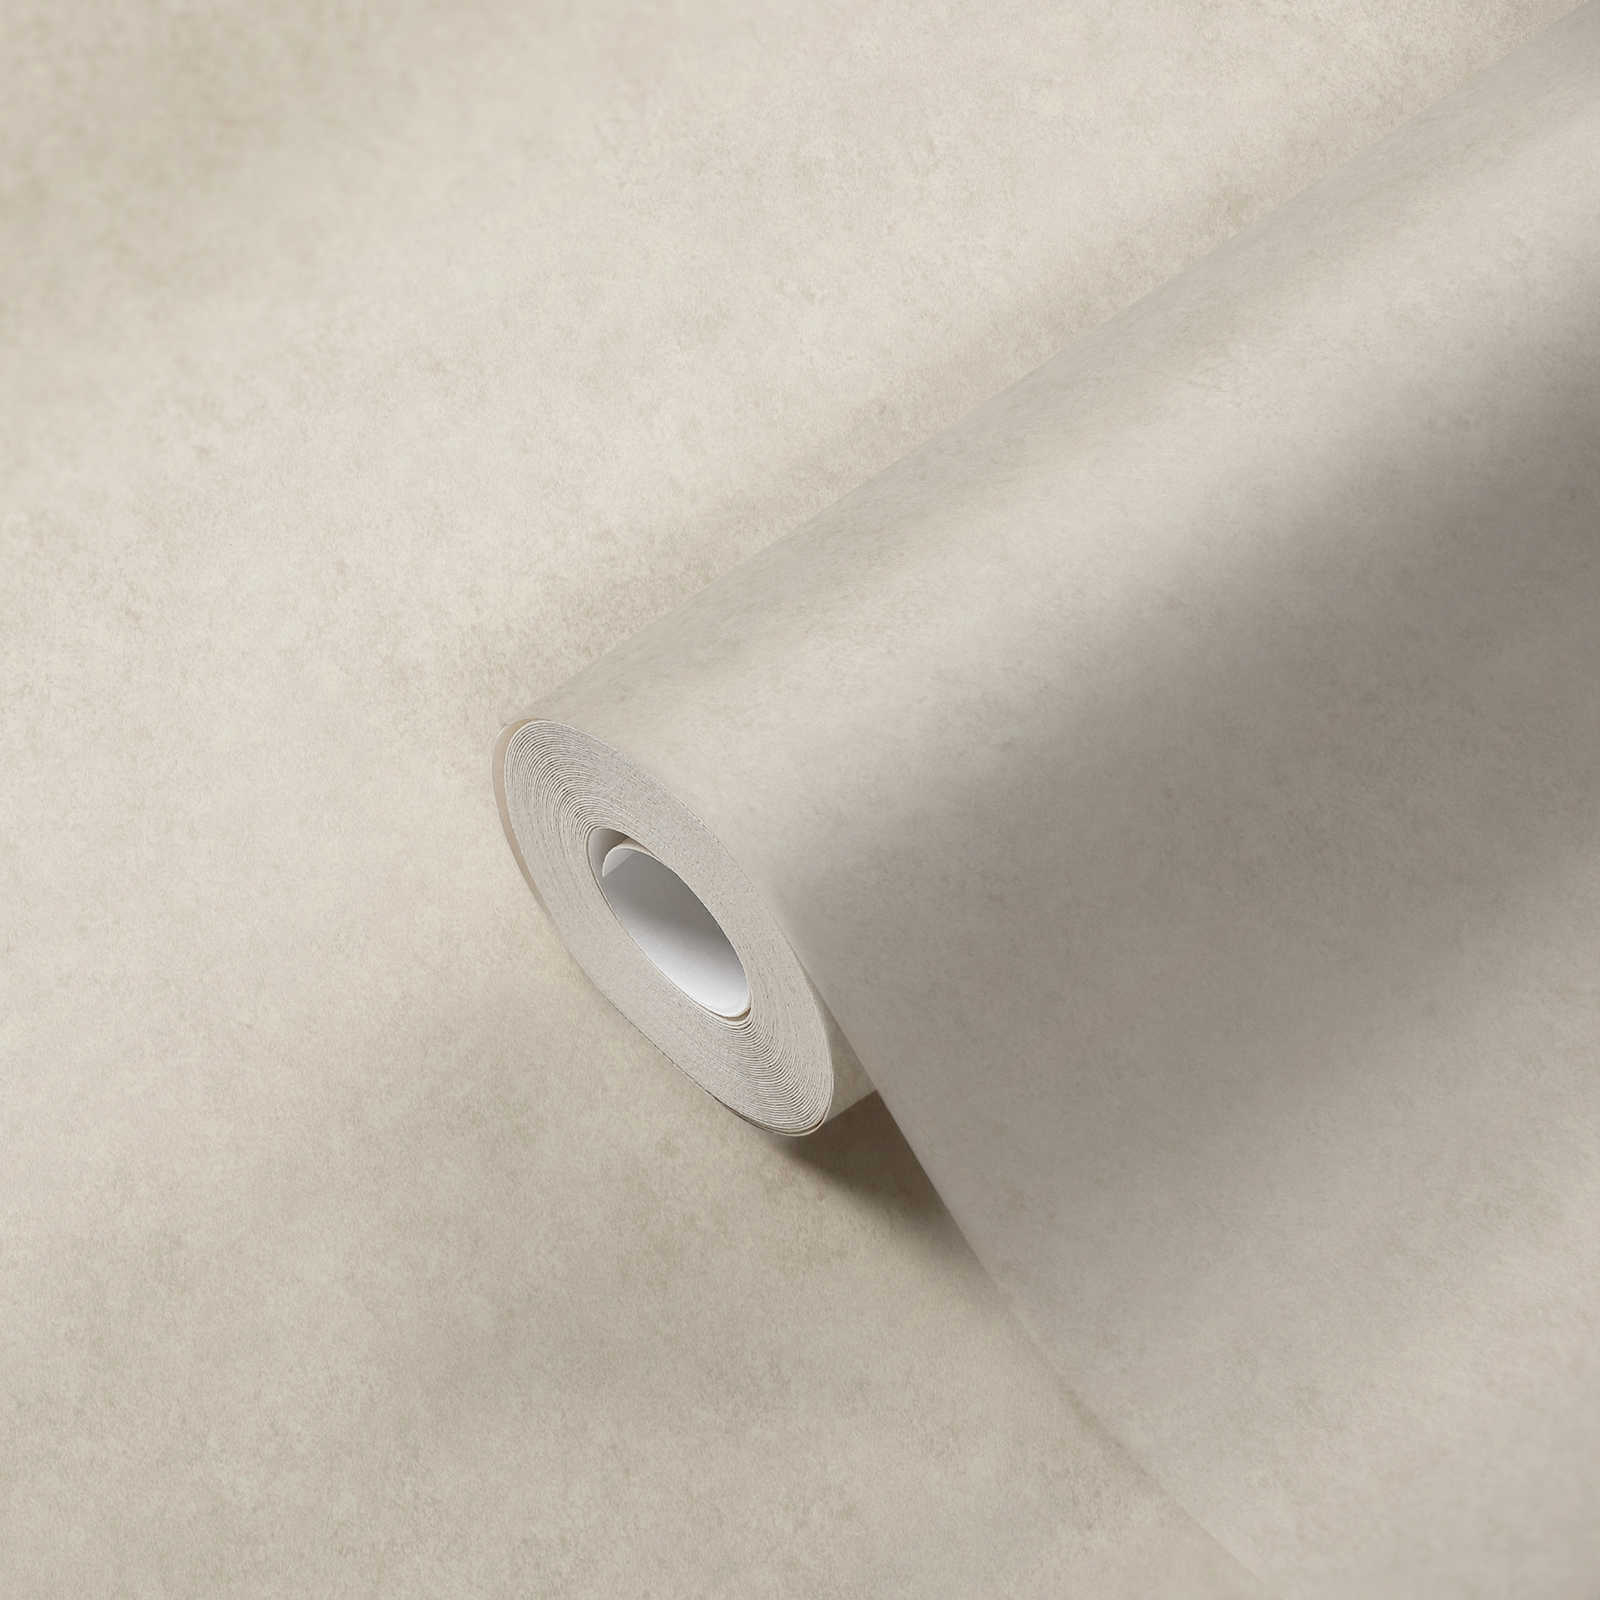             Plain plain wallpaper in plaster look - beige
        